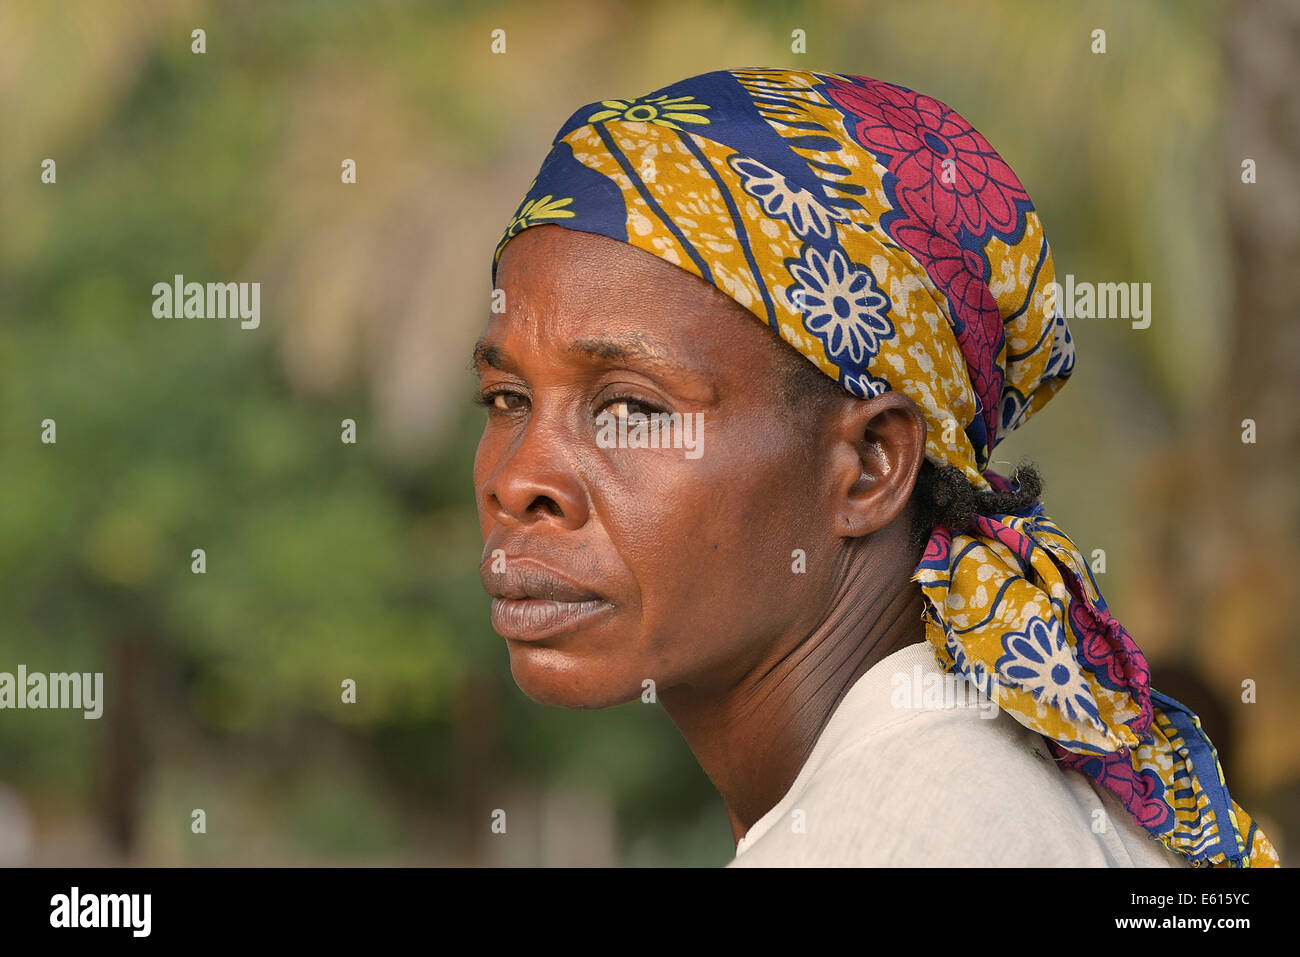 Femme portant un foulard, portrait, Nkala, province de Bandundu, République démocratique du Congo Banque D'Images